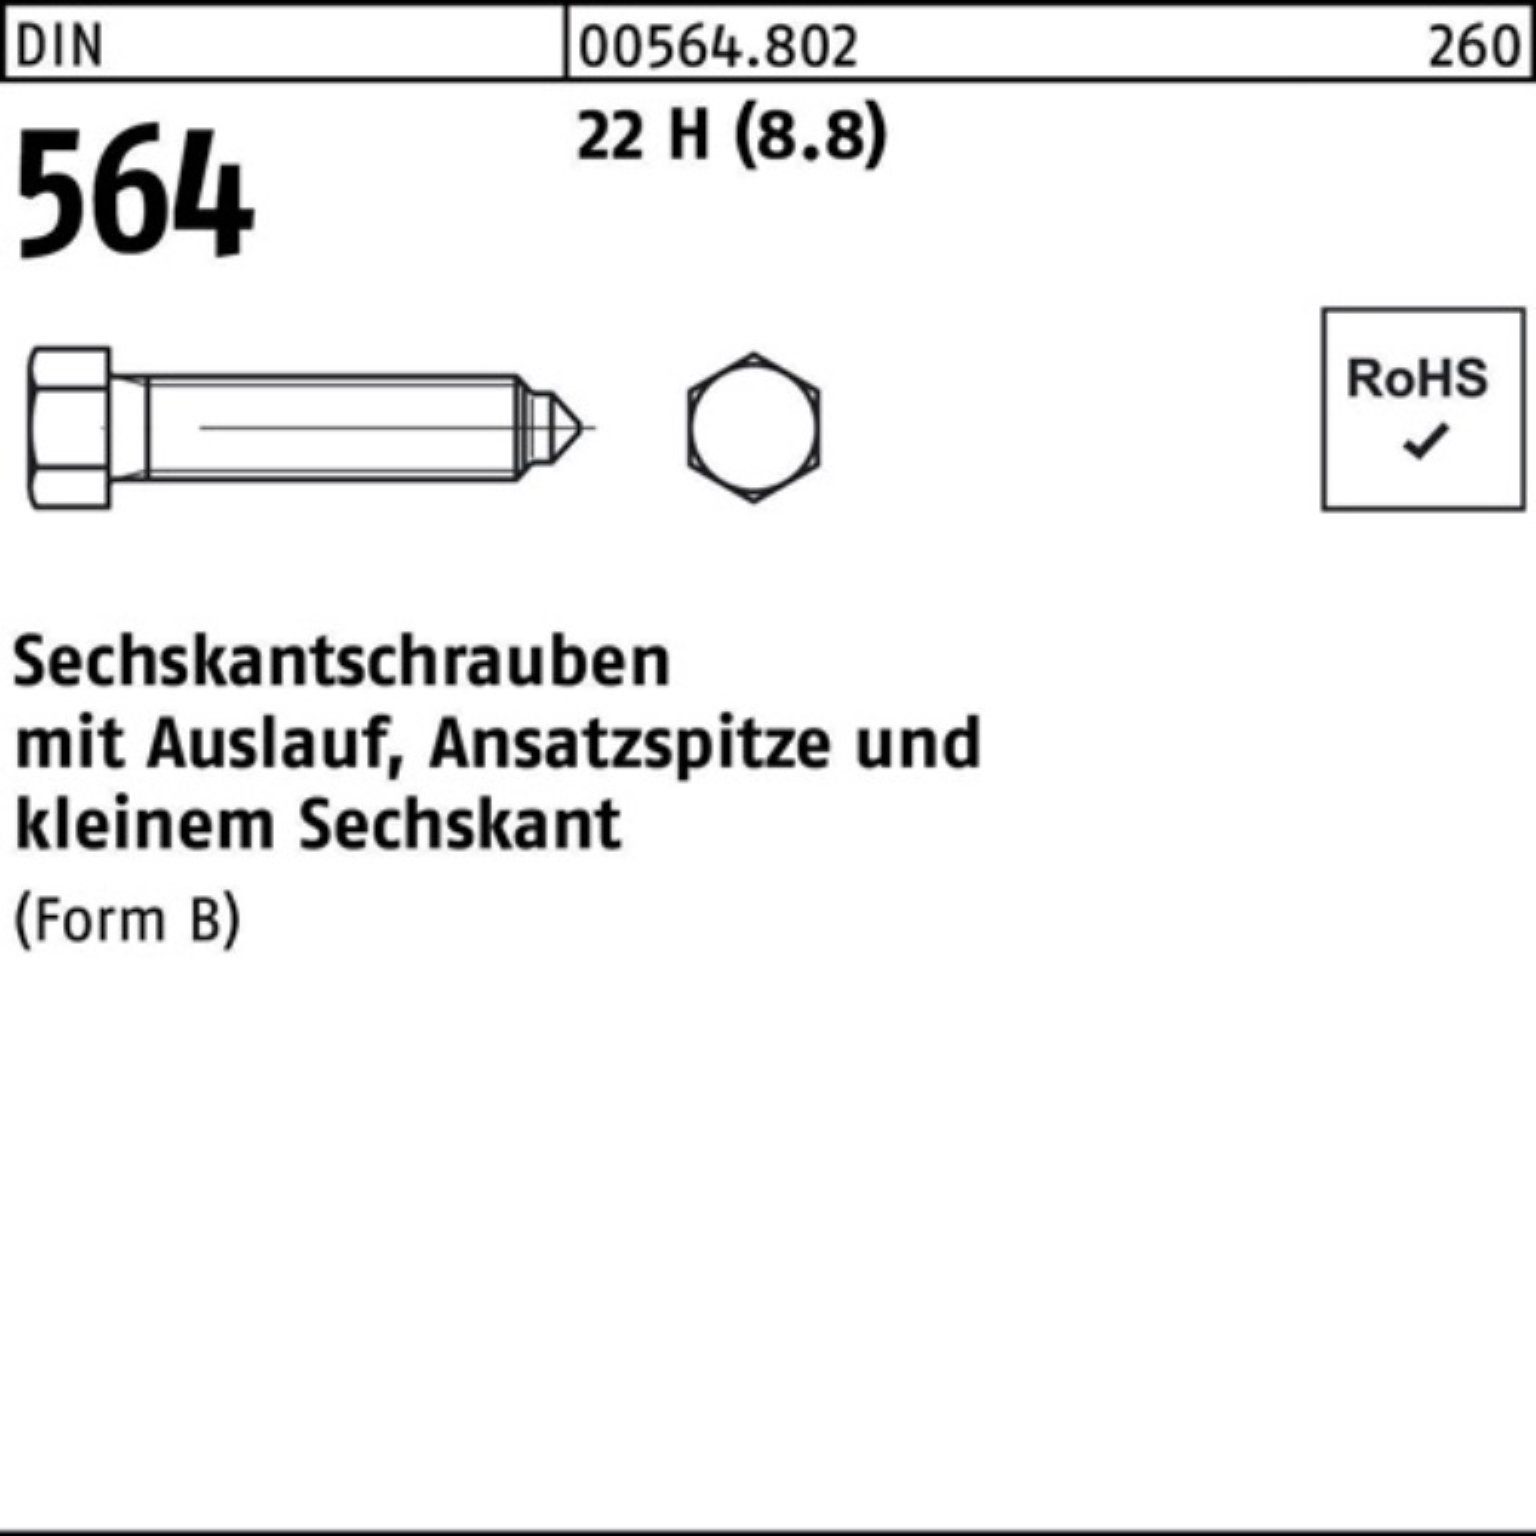 20x 100er DIN 90 Sechskantschraube Ansatzspitze/Auslauf Reyher Pack Sechskantschraube 22 564 BM